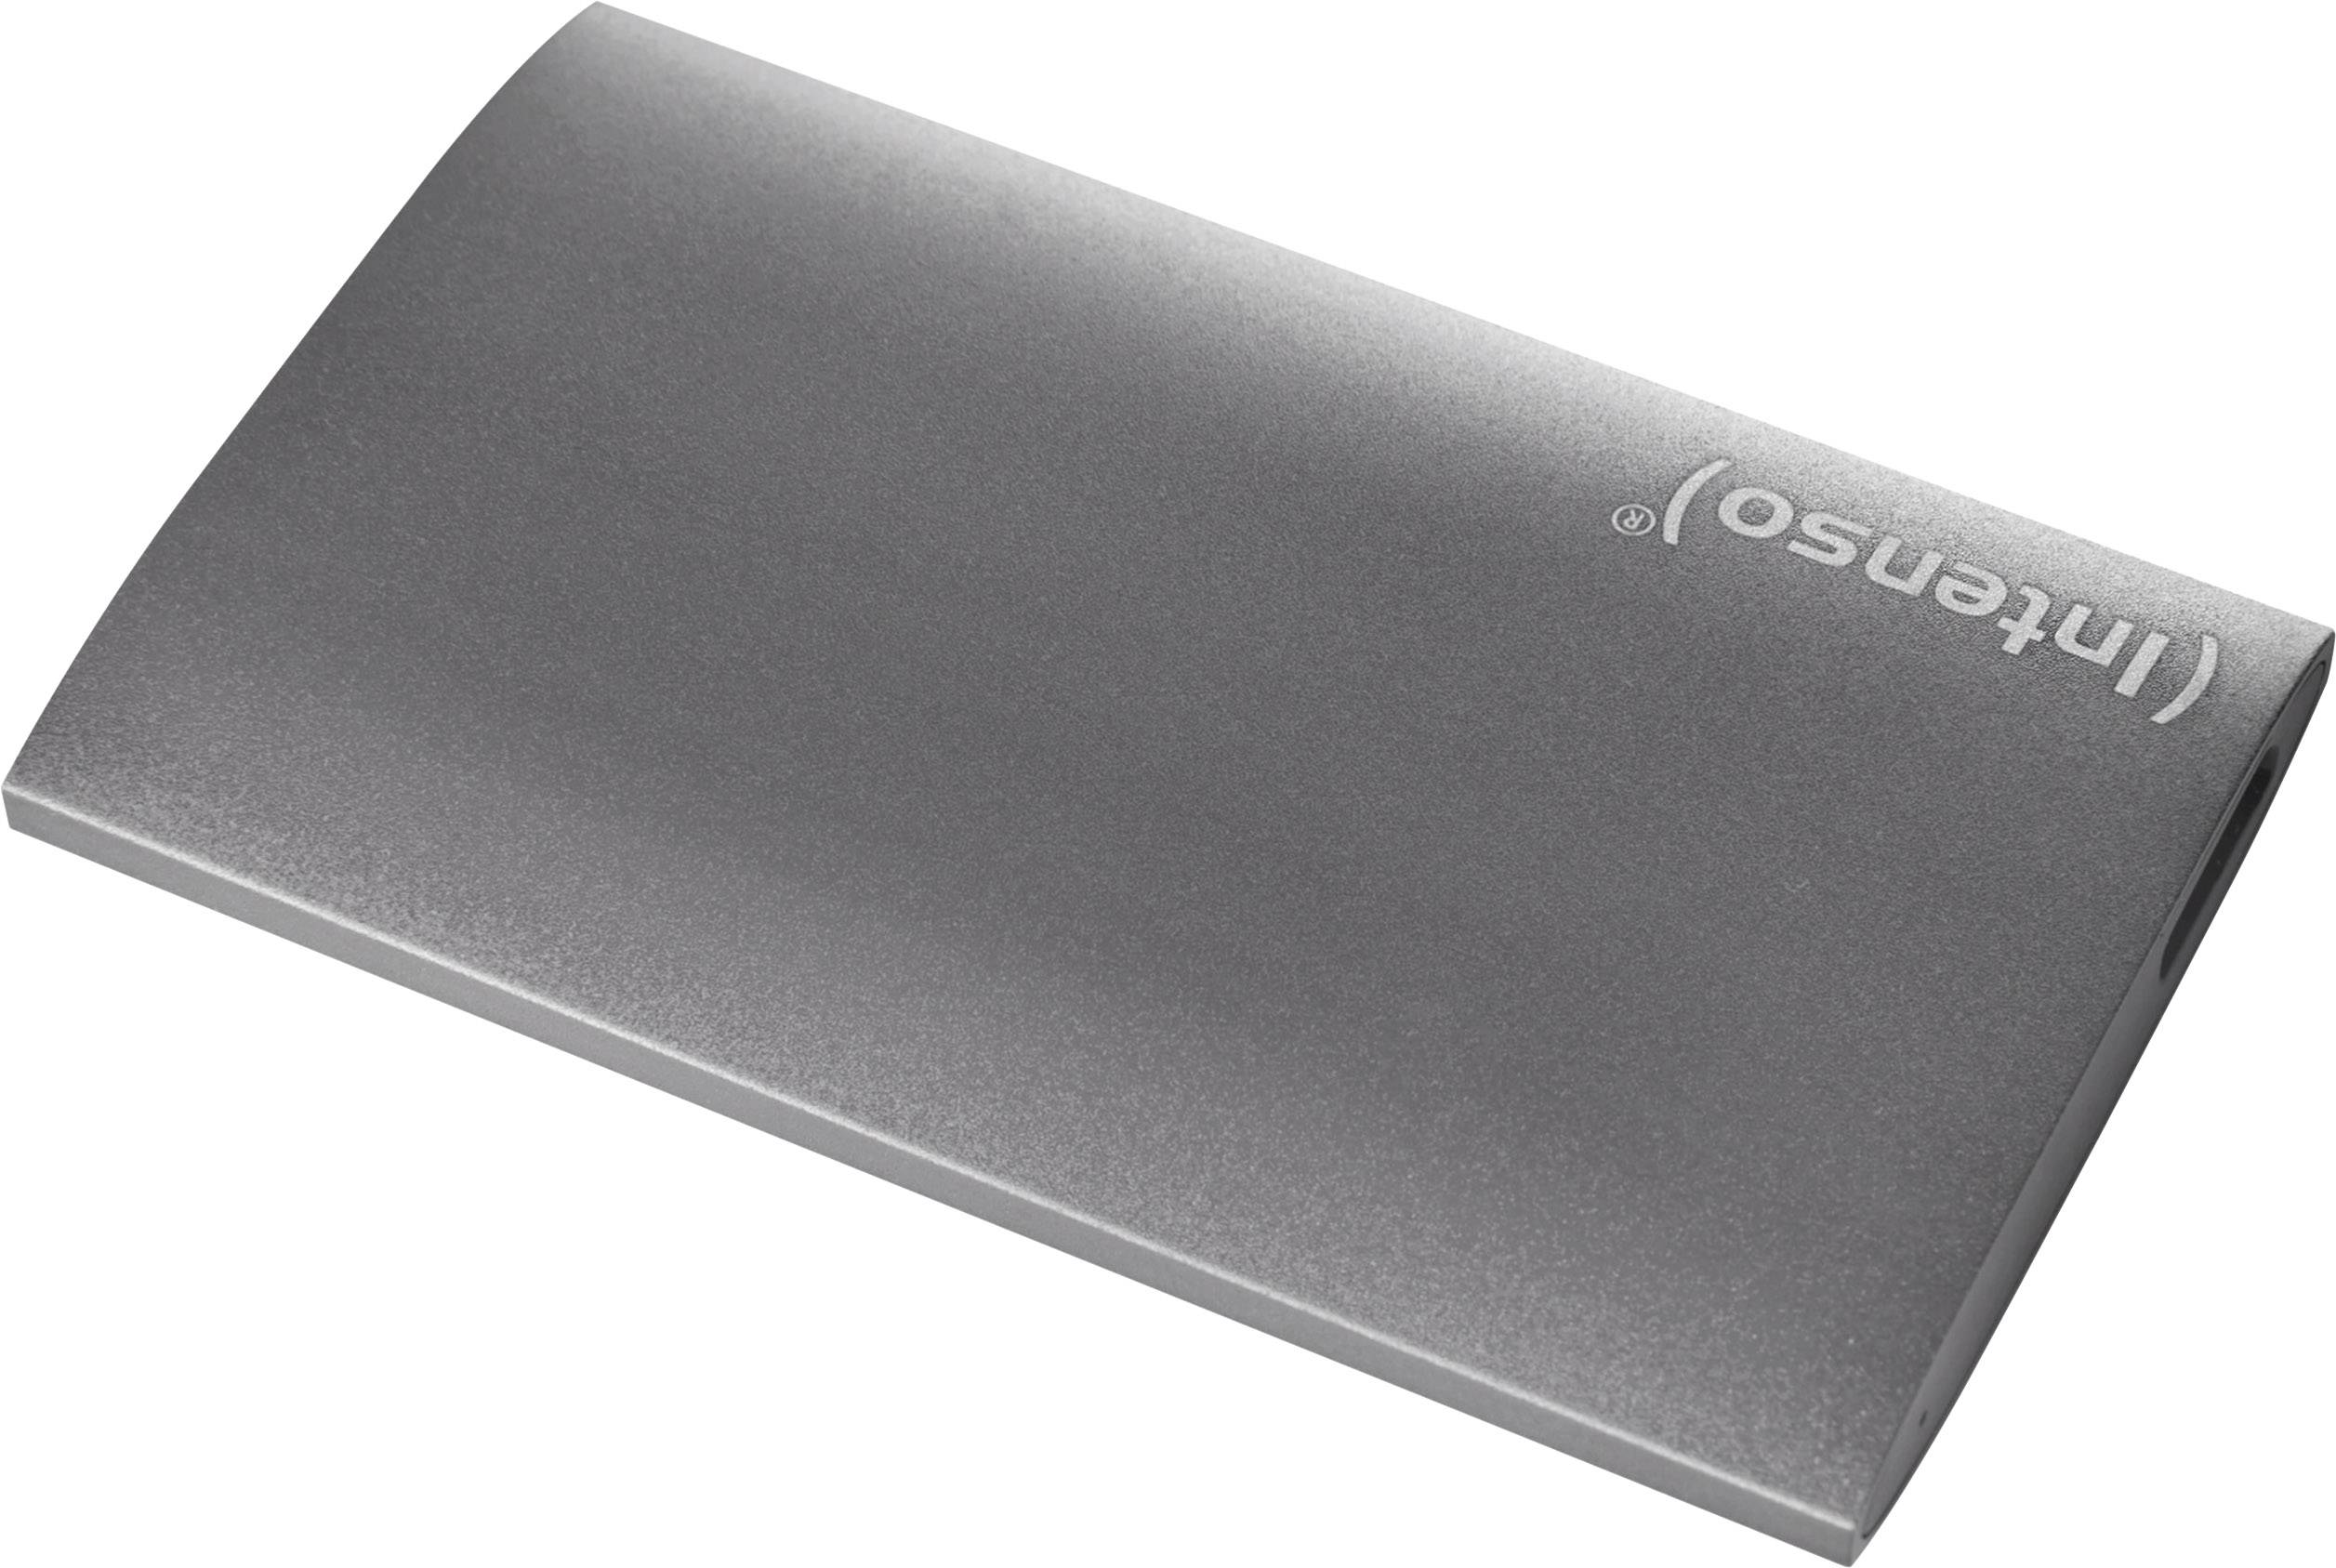 Disque dur externe Intenso Business - SSD - 250 Go - externe (portable) -  USB 3.1 Gen 1 (USB-C connecteur) - anthracite